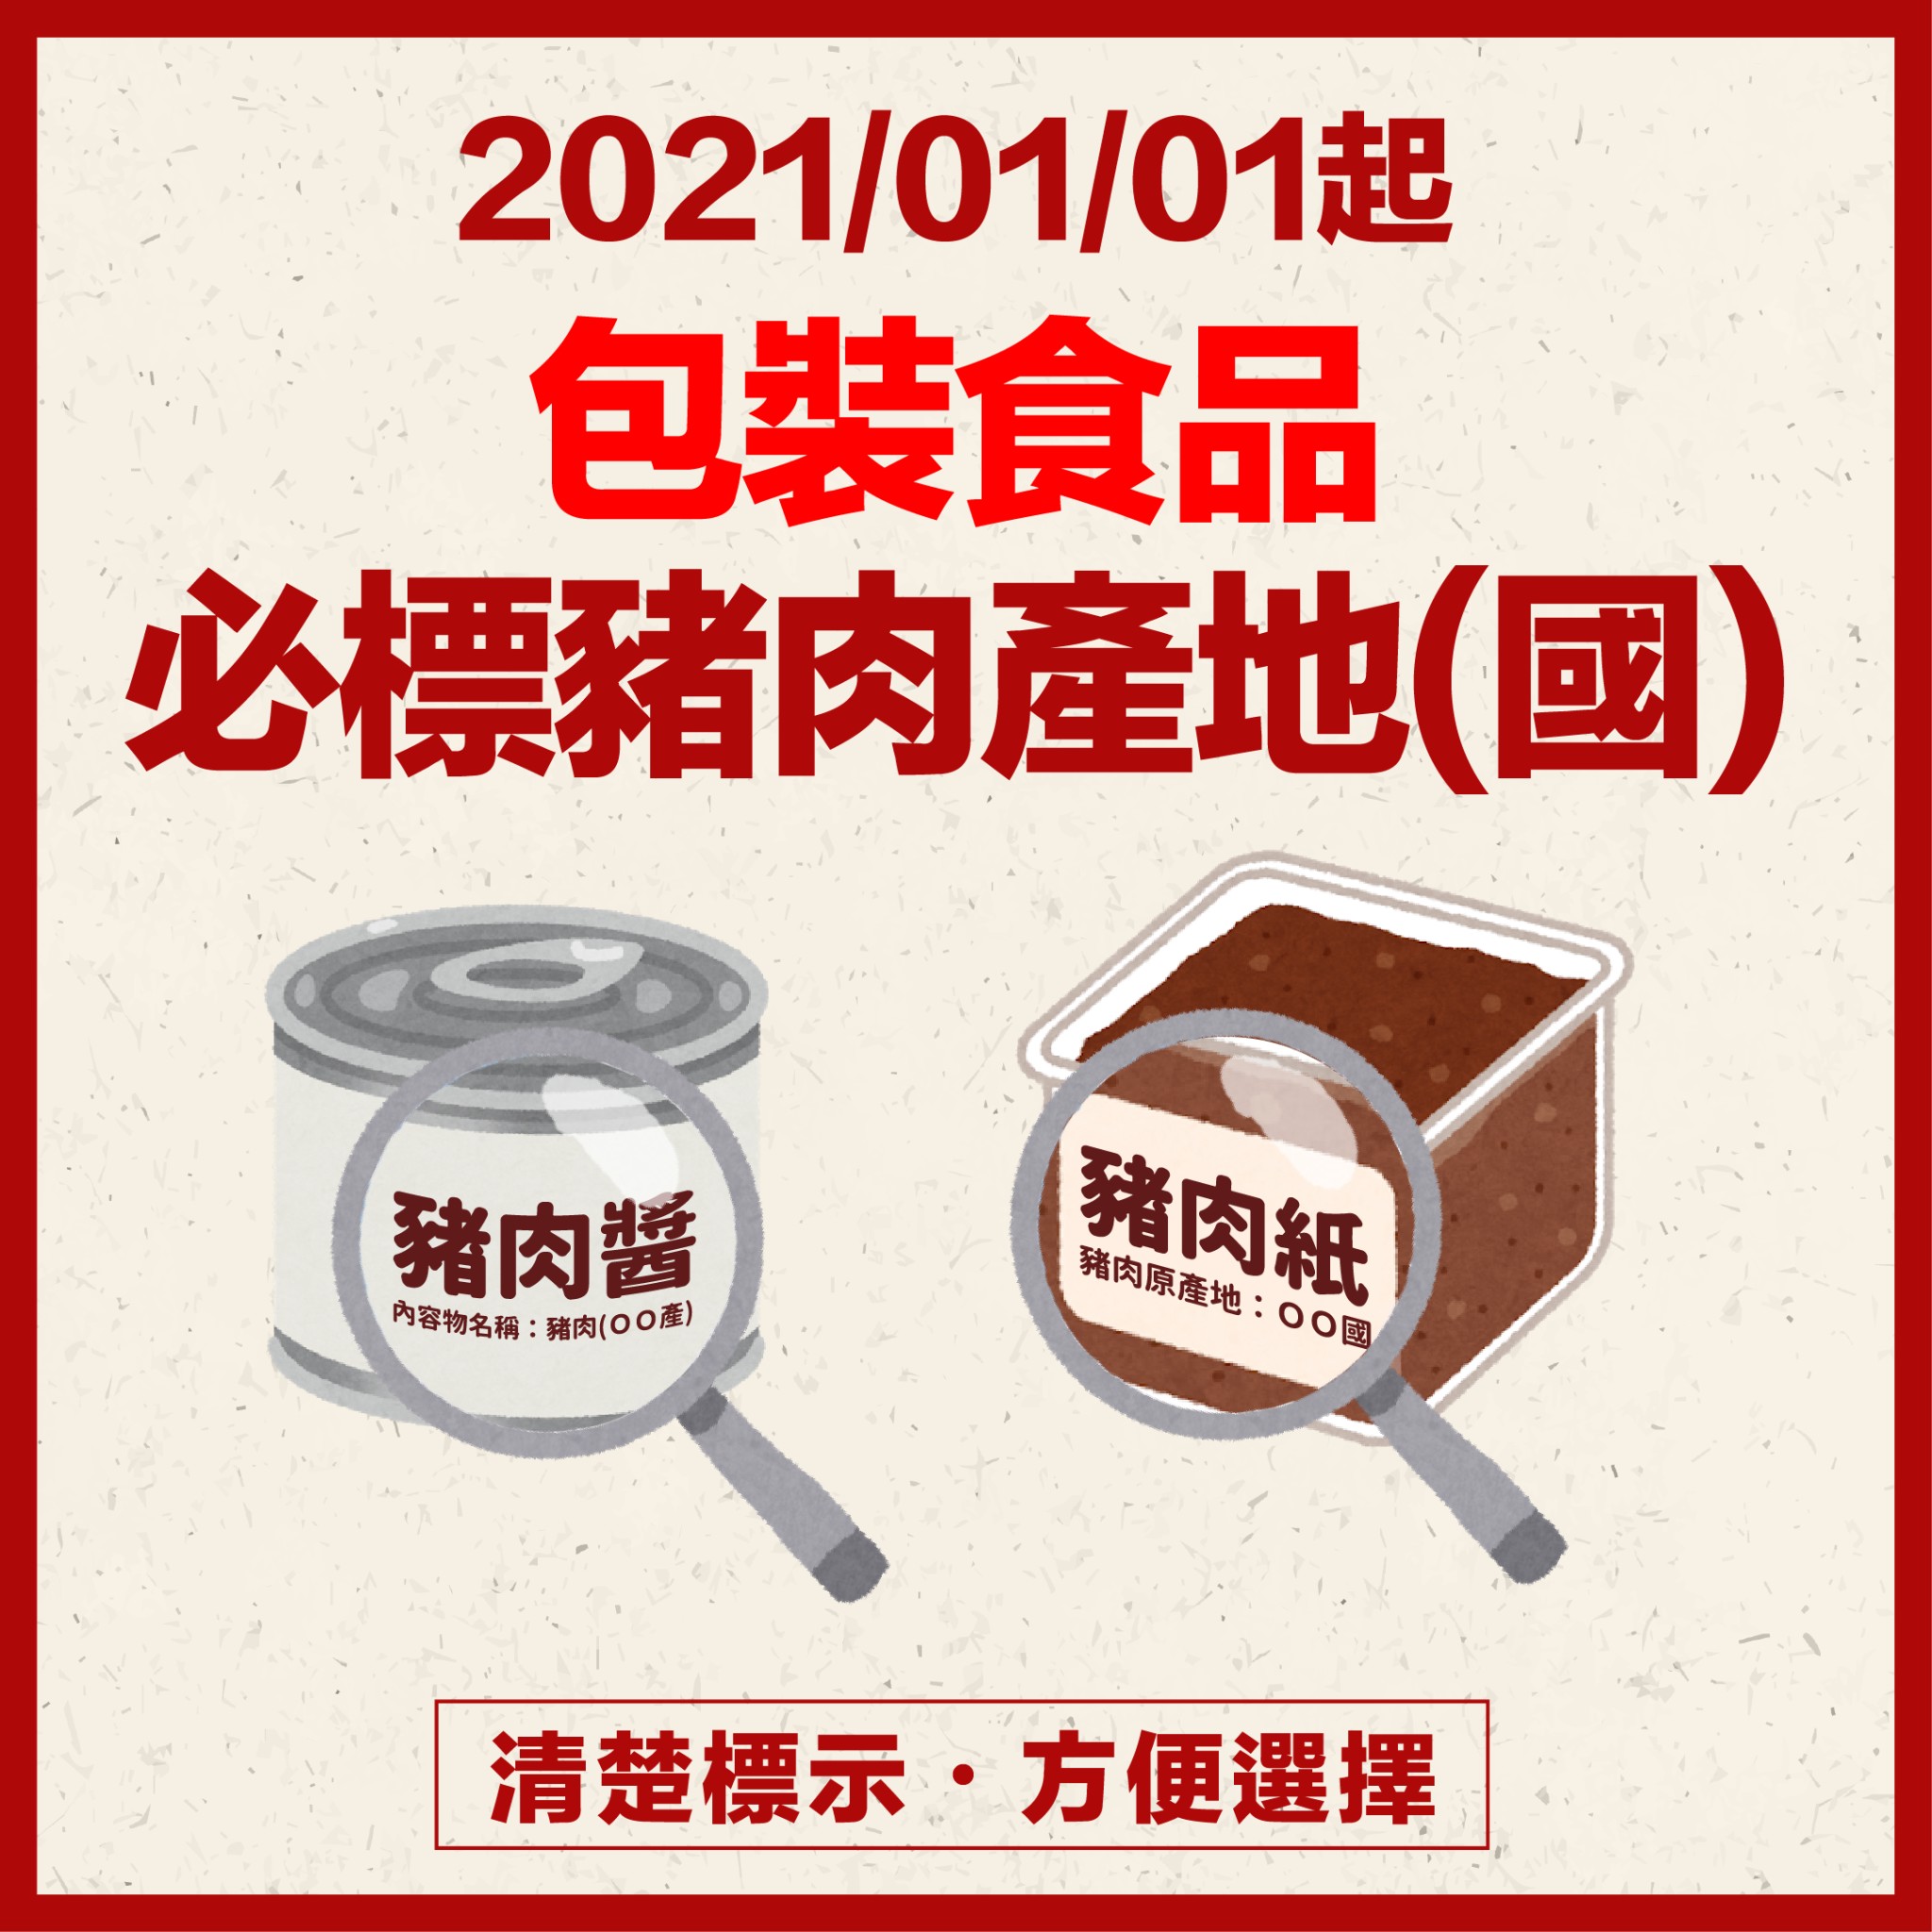 20210101起 包裝食品必標豬肉產地(國)